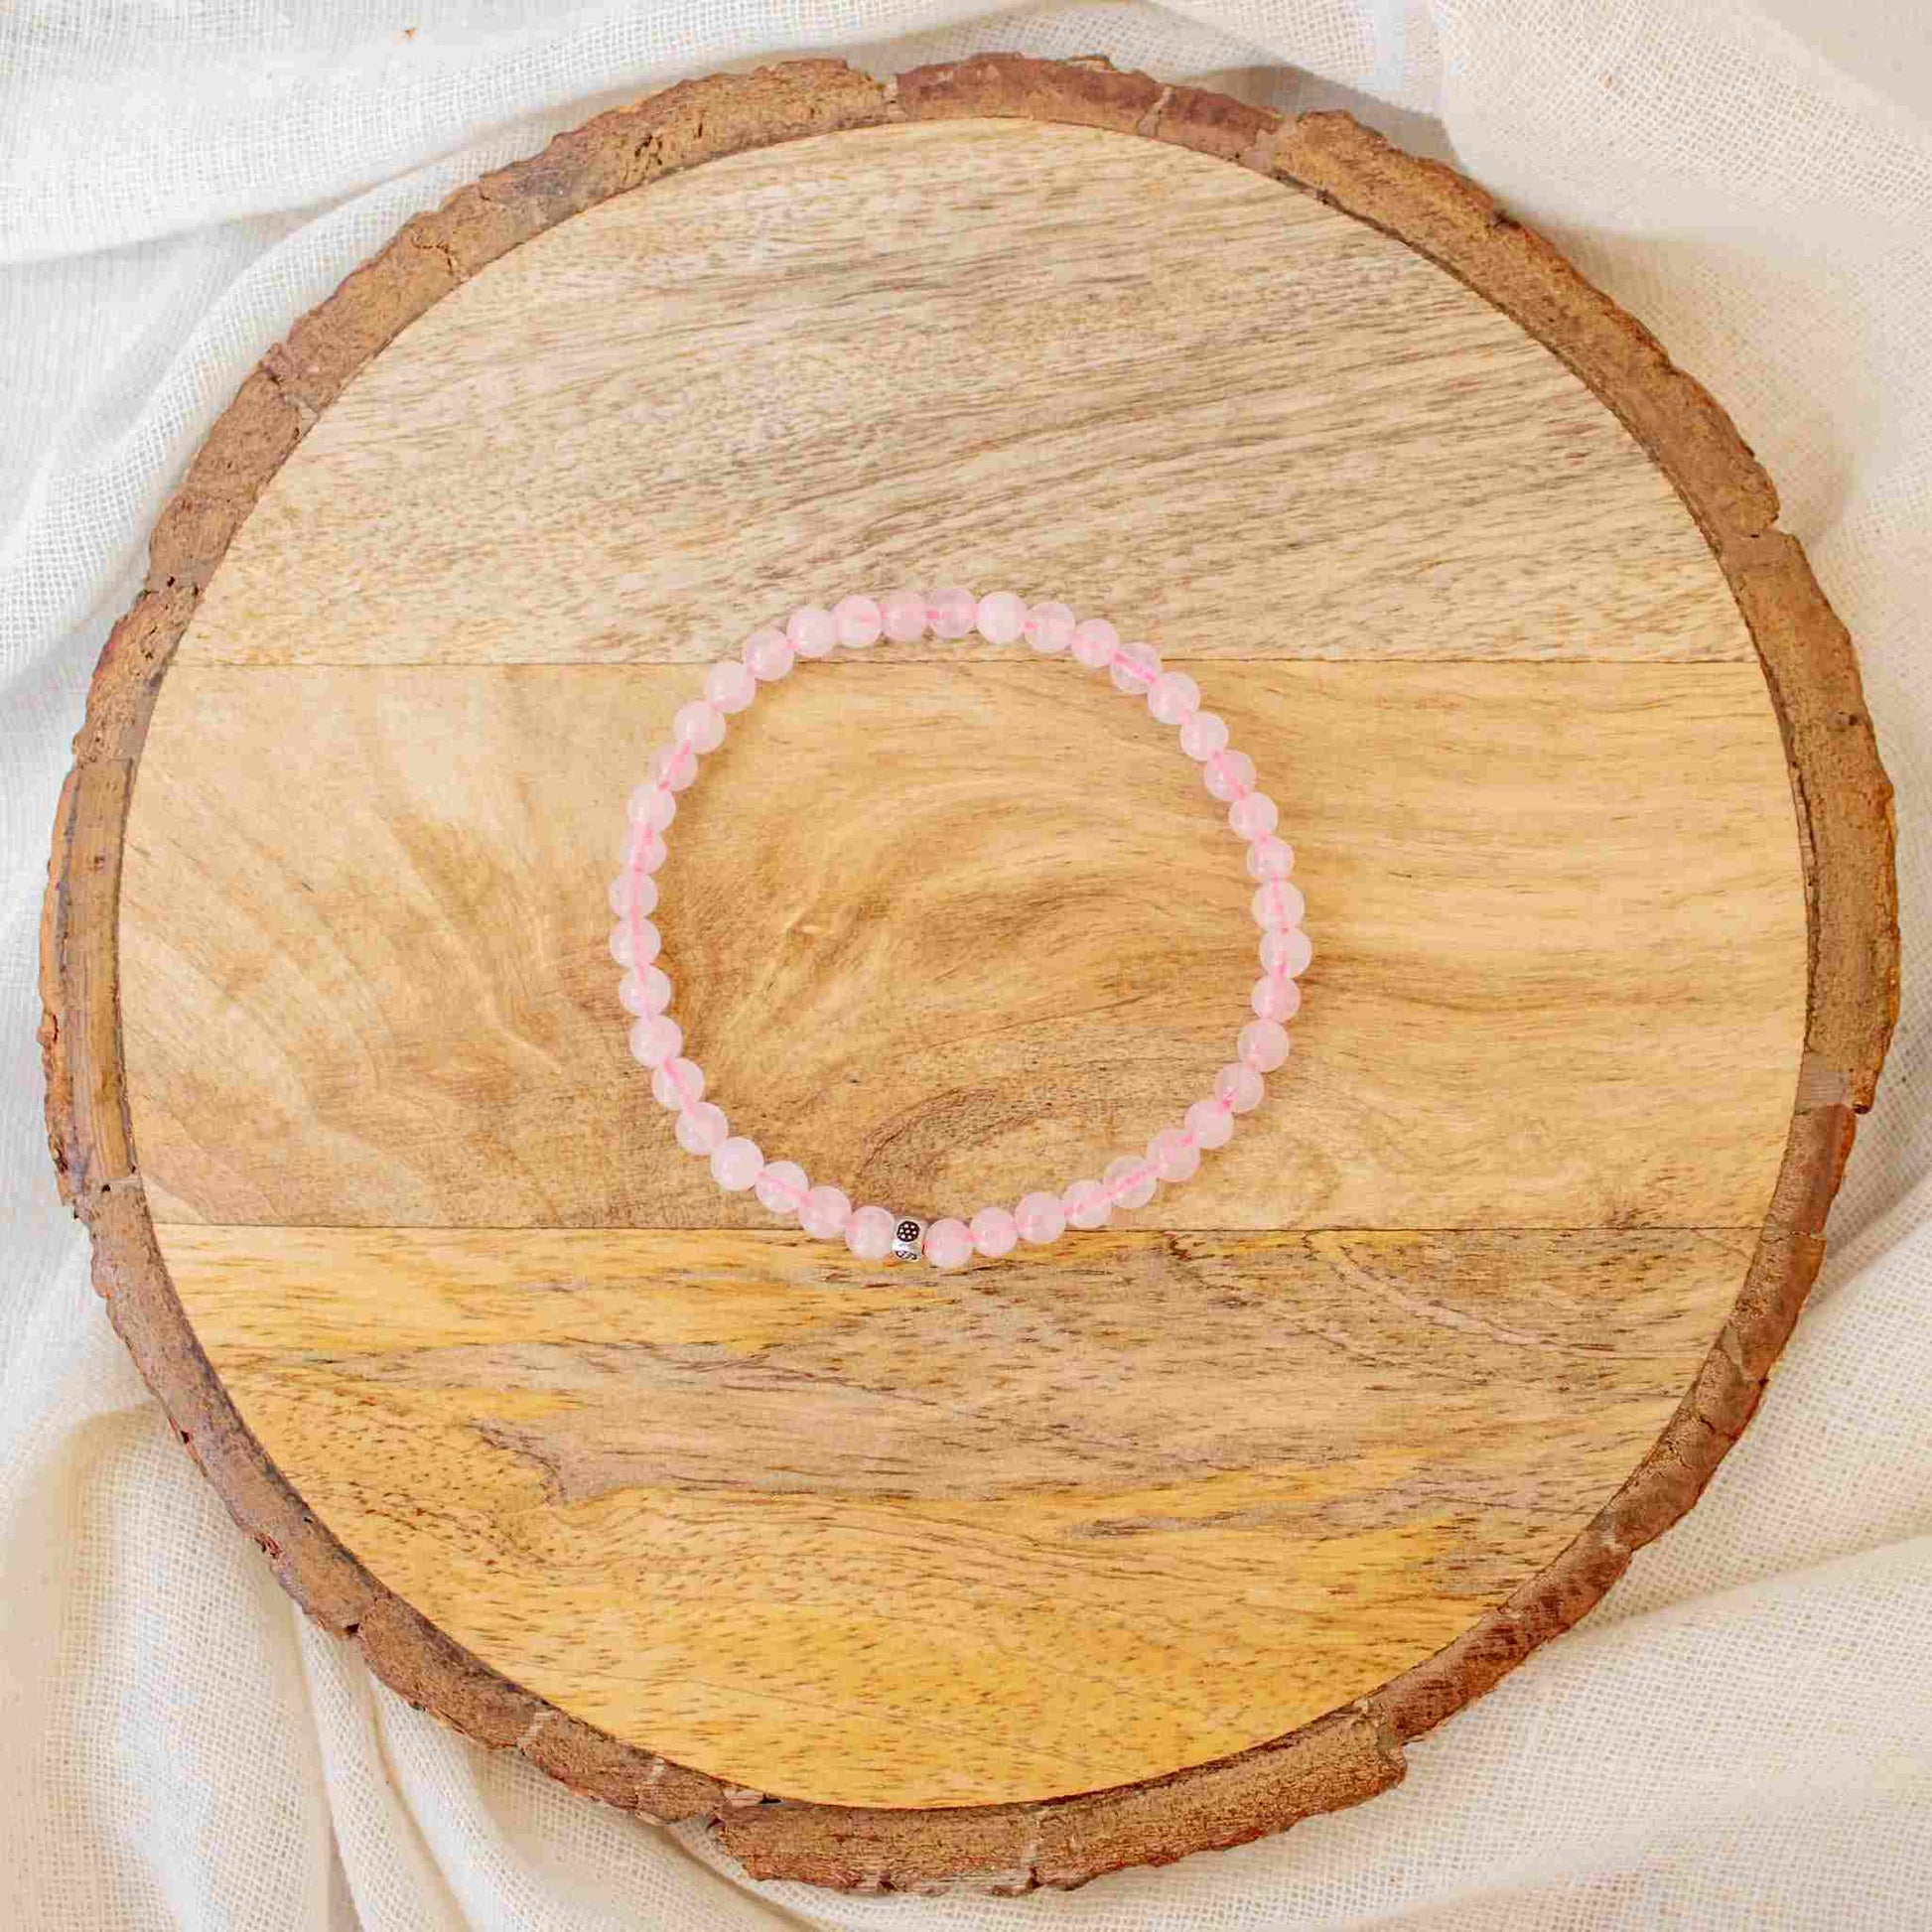 original rose quartz bracelet 4mm beads